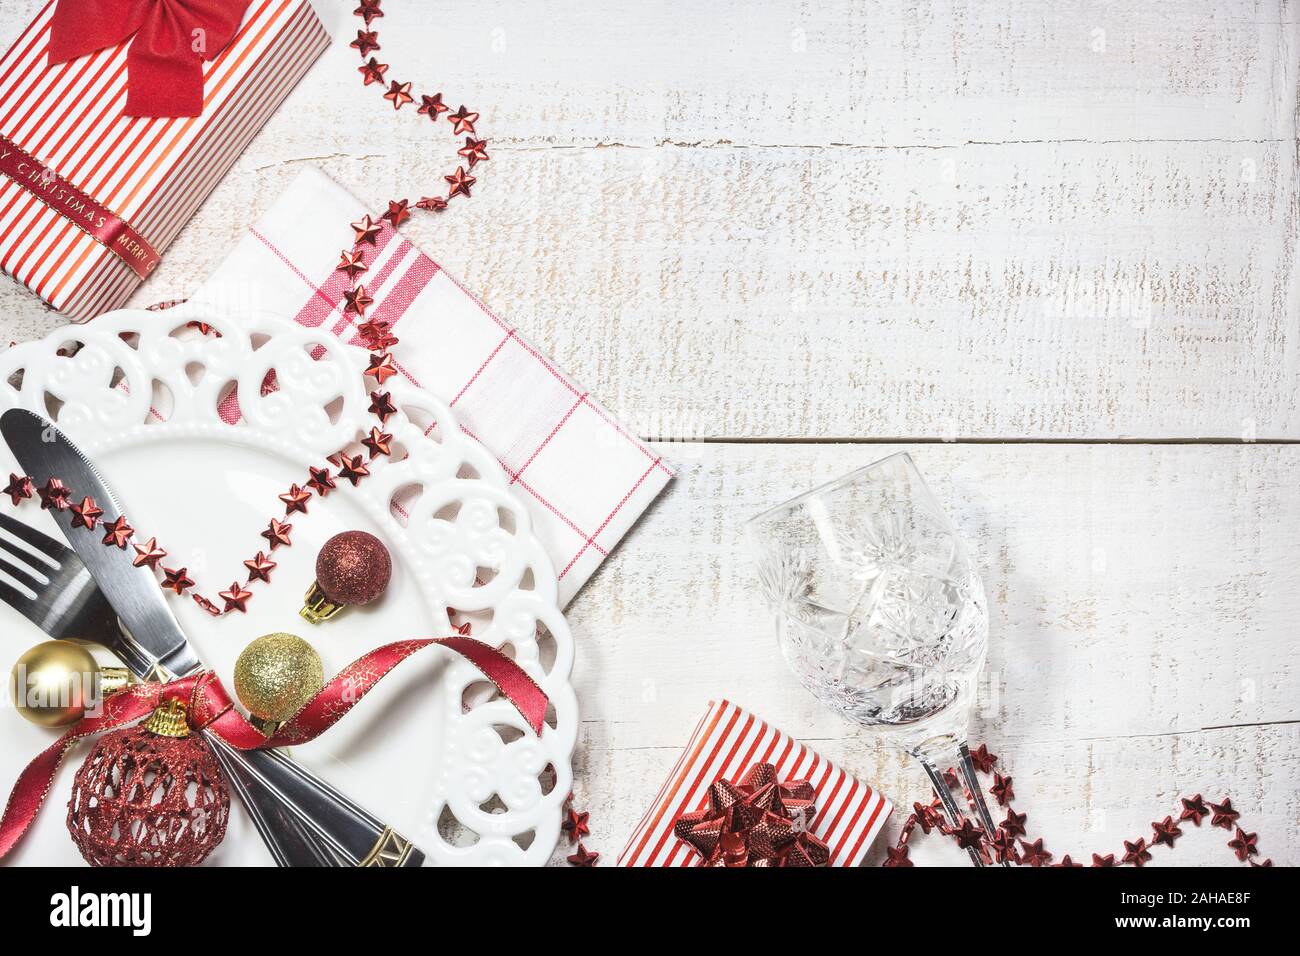 Réglage de la table avec des coffrets cadeaux et des décorations de Noël, vue du dessus avec l'exemplaire de l'espace. Préparation pour Noël ou le Nouvel An. Banque D'Images